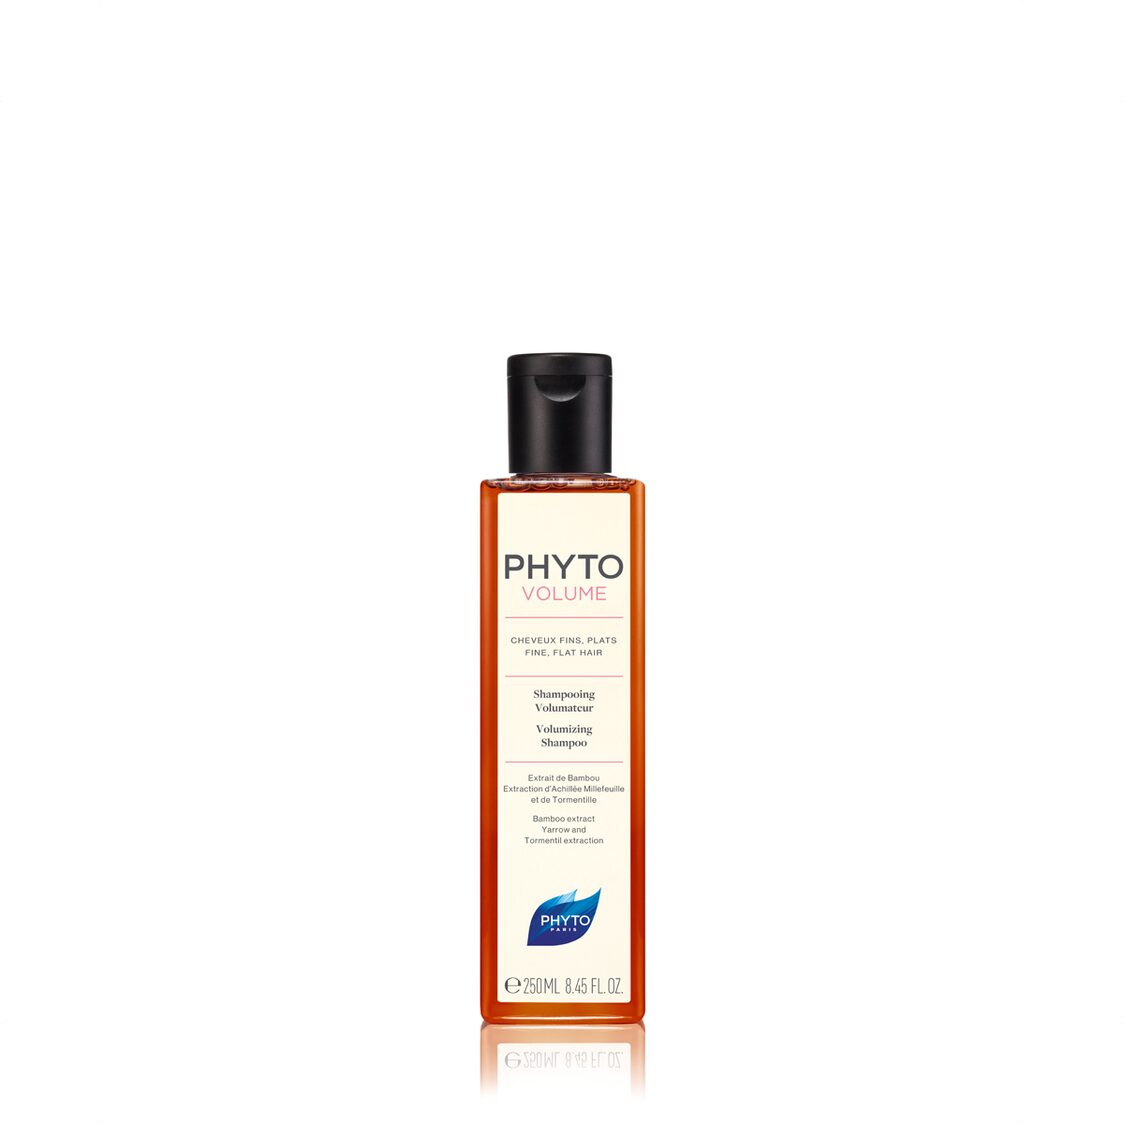 Phyto Phytovolume Volumizing Shampoo 200ml